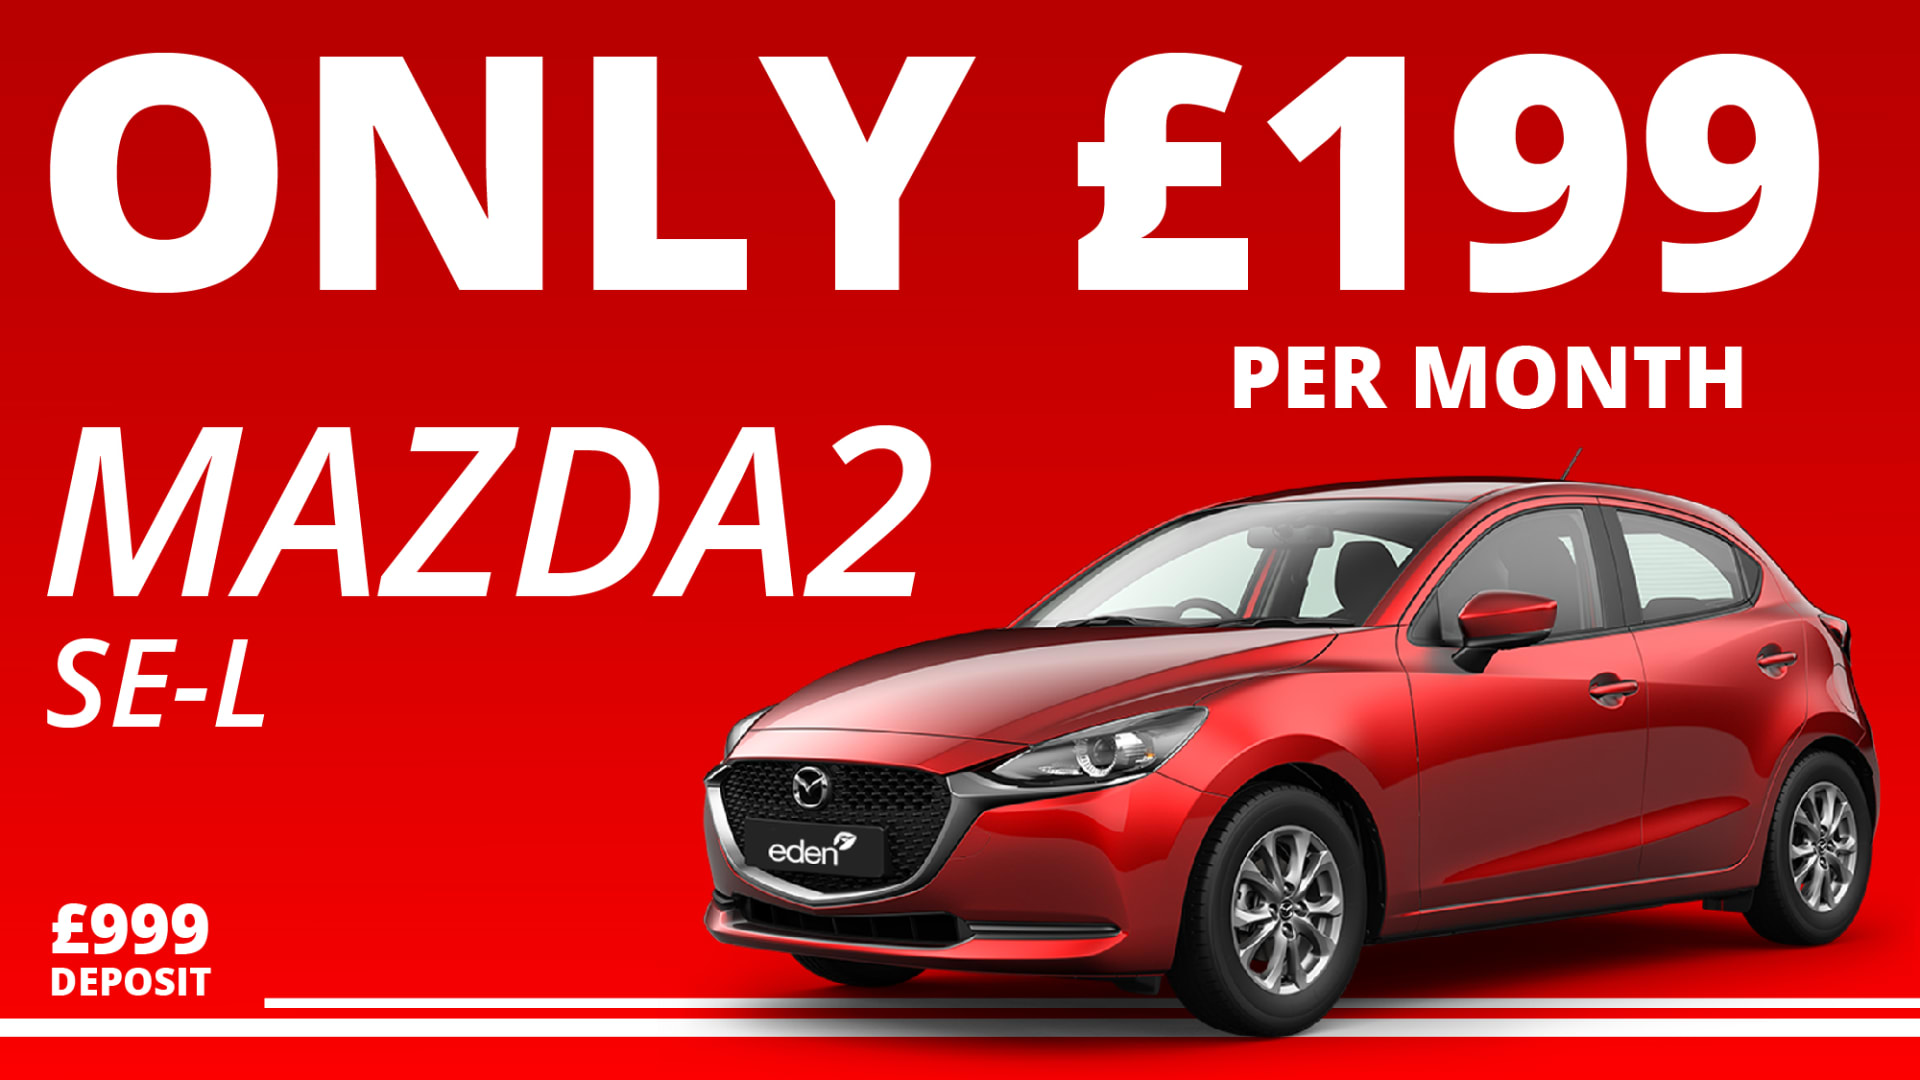 Mazda2 £199